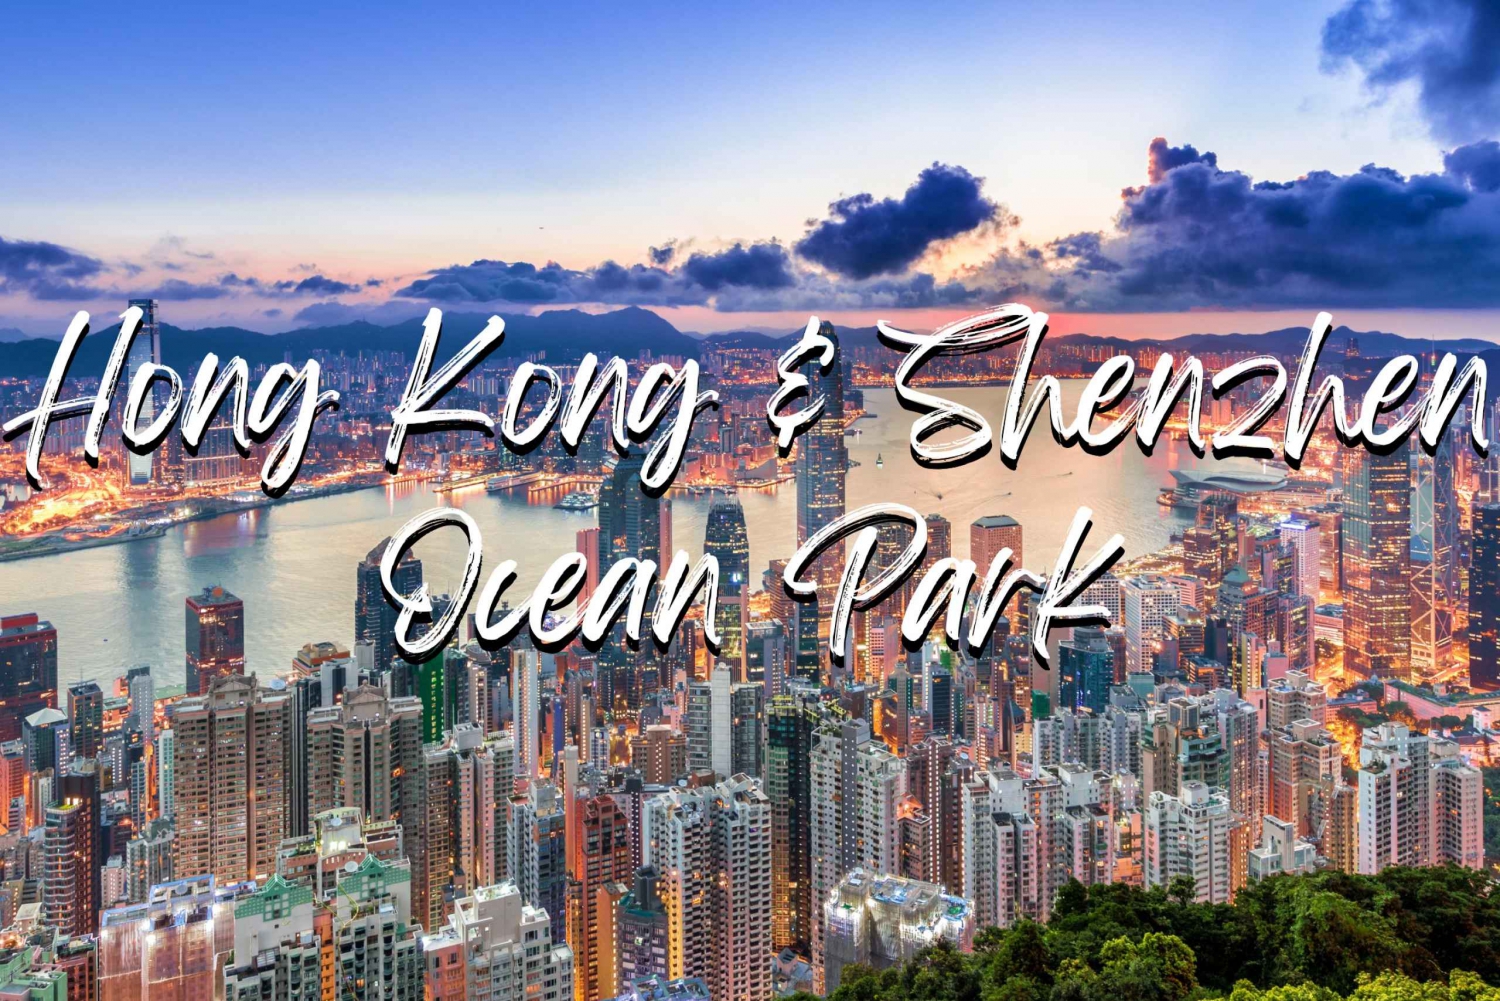 Hongkong & Shenzhen Arrangement 2: Oceaanpark